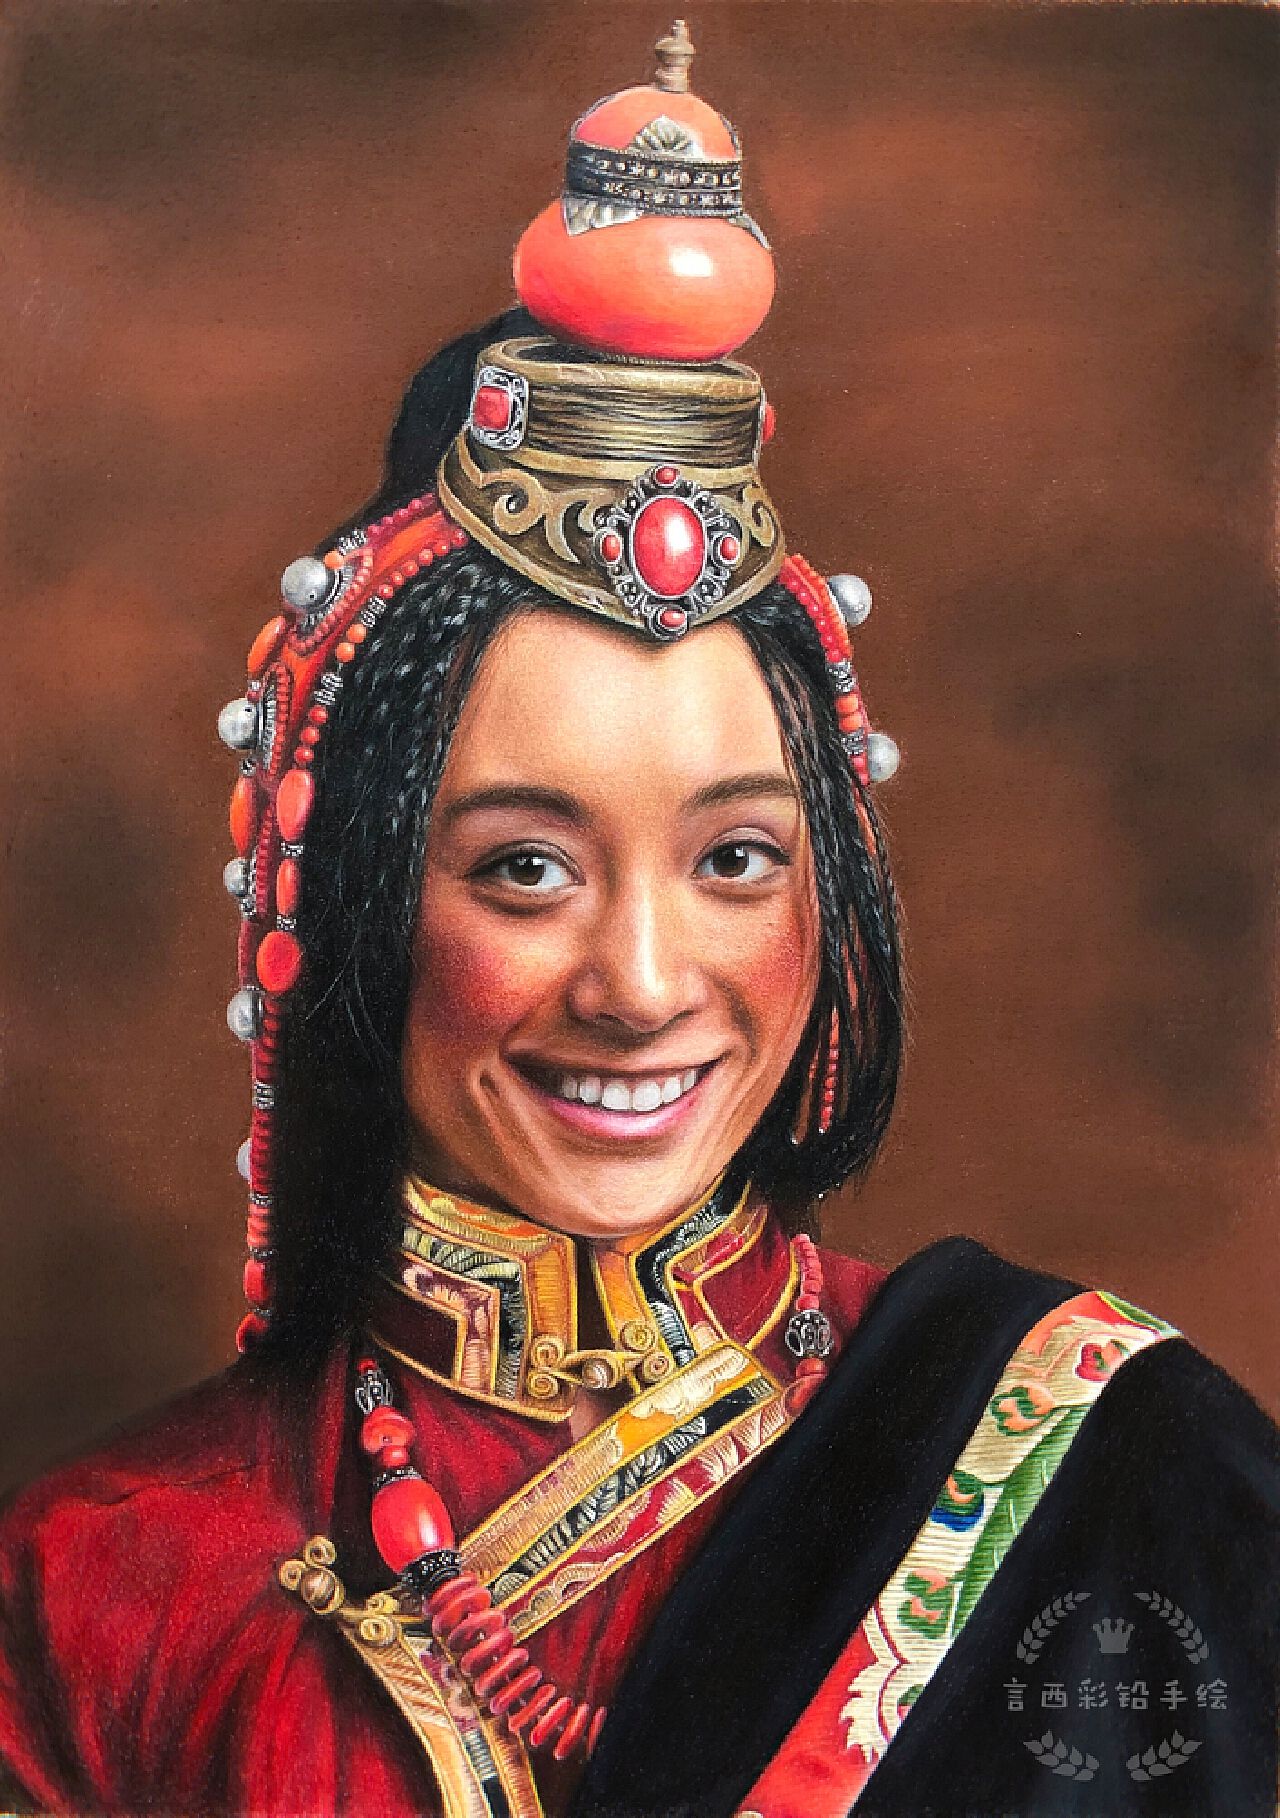 青海牧區的藏族男女都有佩戴耳環的習俗，男子一般左耳戴單個耳環，女子戴雙耳環，多爲金銀鑲邊的紅珊瑚大耳環。有些地方的藏族婦女會戴十幾厘米長的珍珠、珊瑚鏈式耳墜。-三江源地区文化-图片